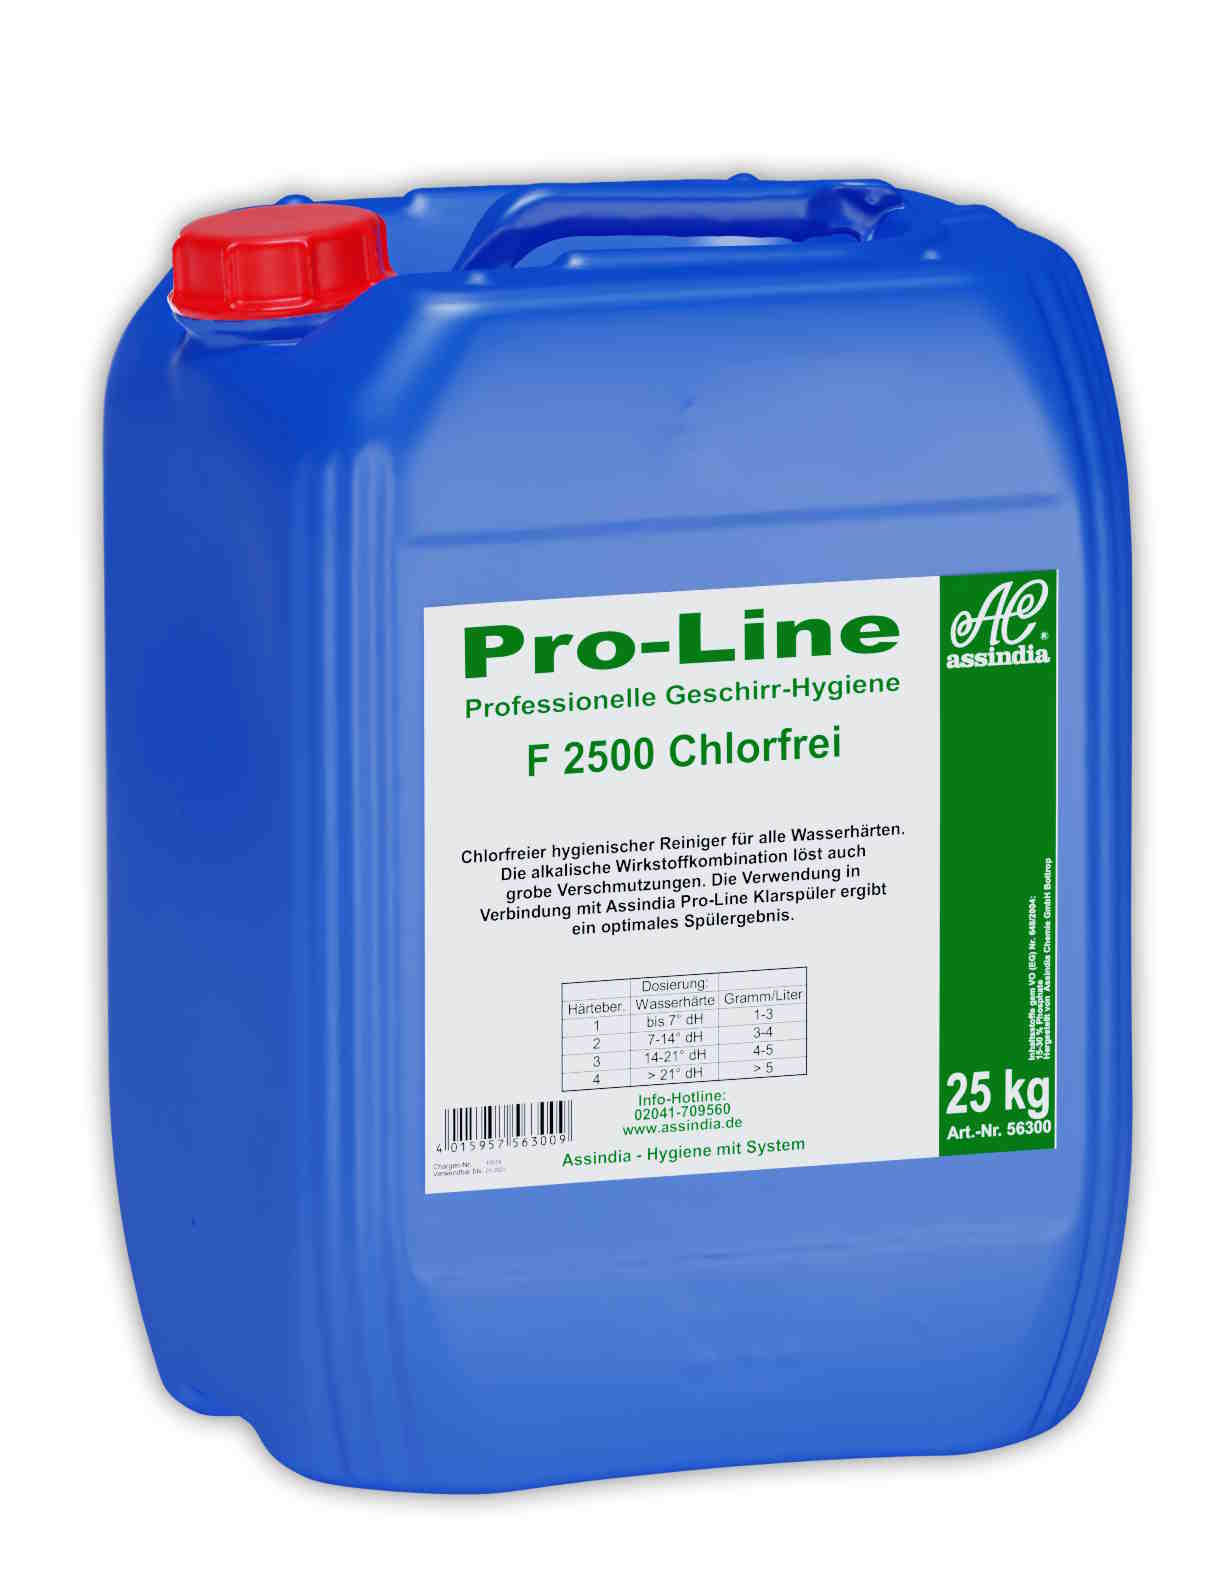 Pro-Line F 2500 chlorfrei flüssiger Geschirr-Reiniger | 25 kg Kanister